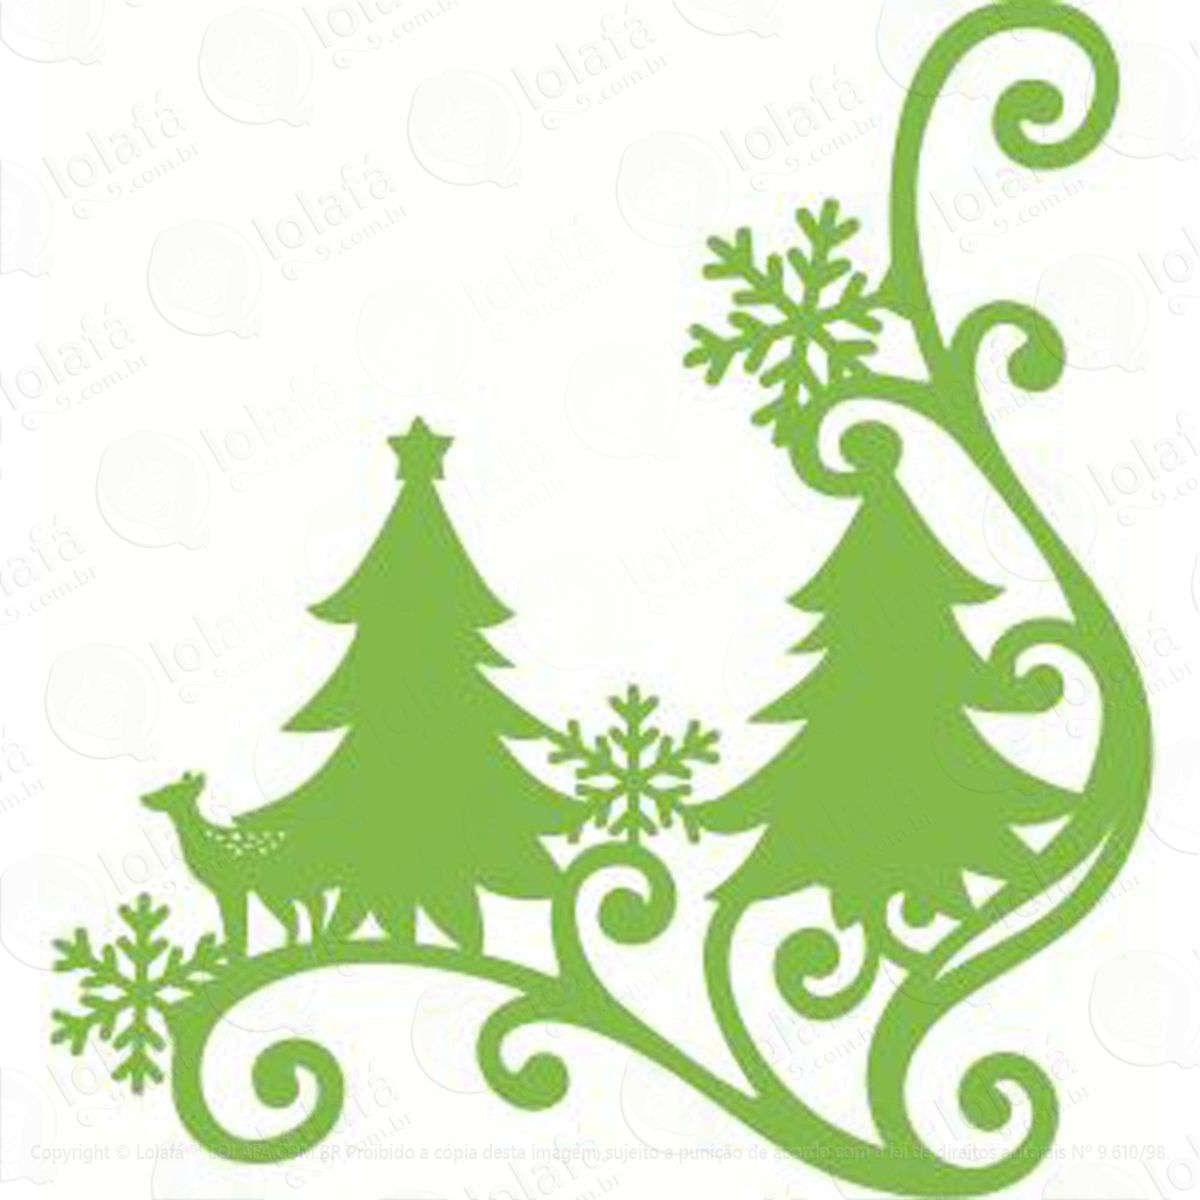 arabesco pinheiro rena adesivo de natal para vitrine, parede, porta de vidro - decoração natalina mod:15